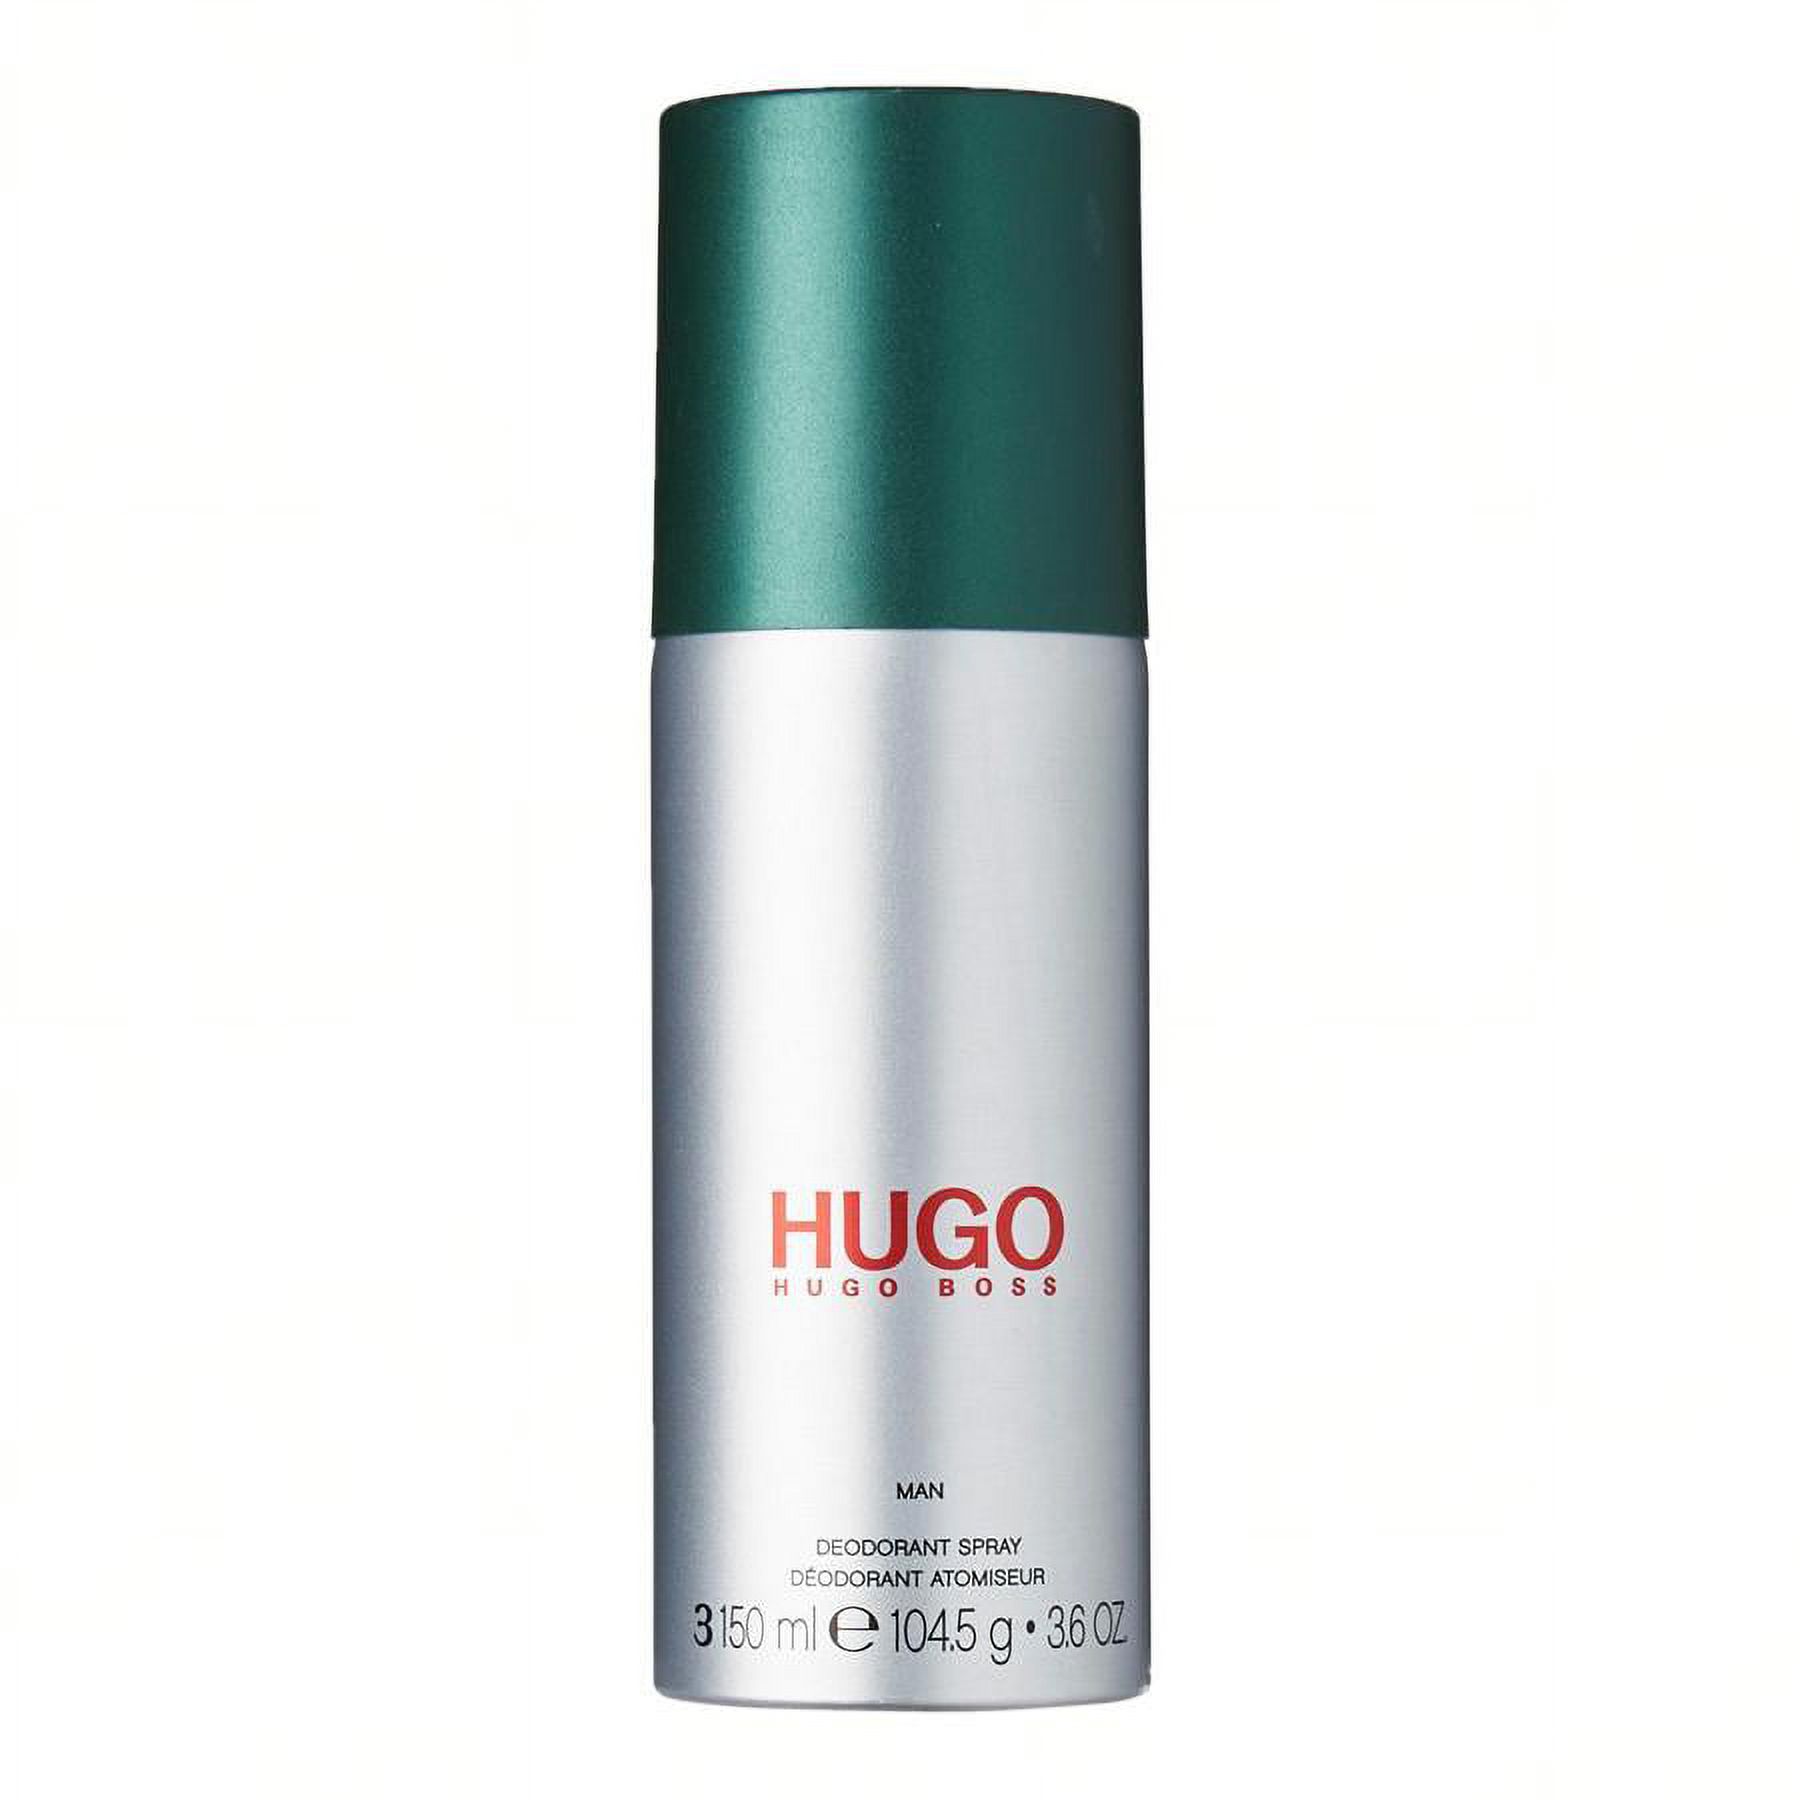 Hugo by Hugo Boss for Men 3 pack Deodorant Body Spray (3.6 oz) - image 2 of 2